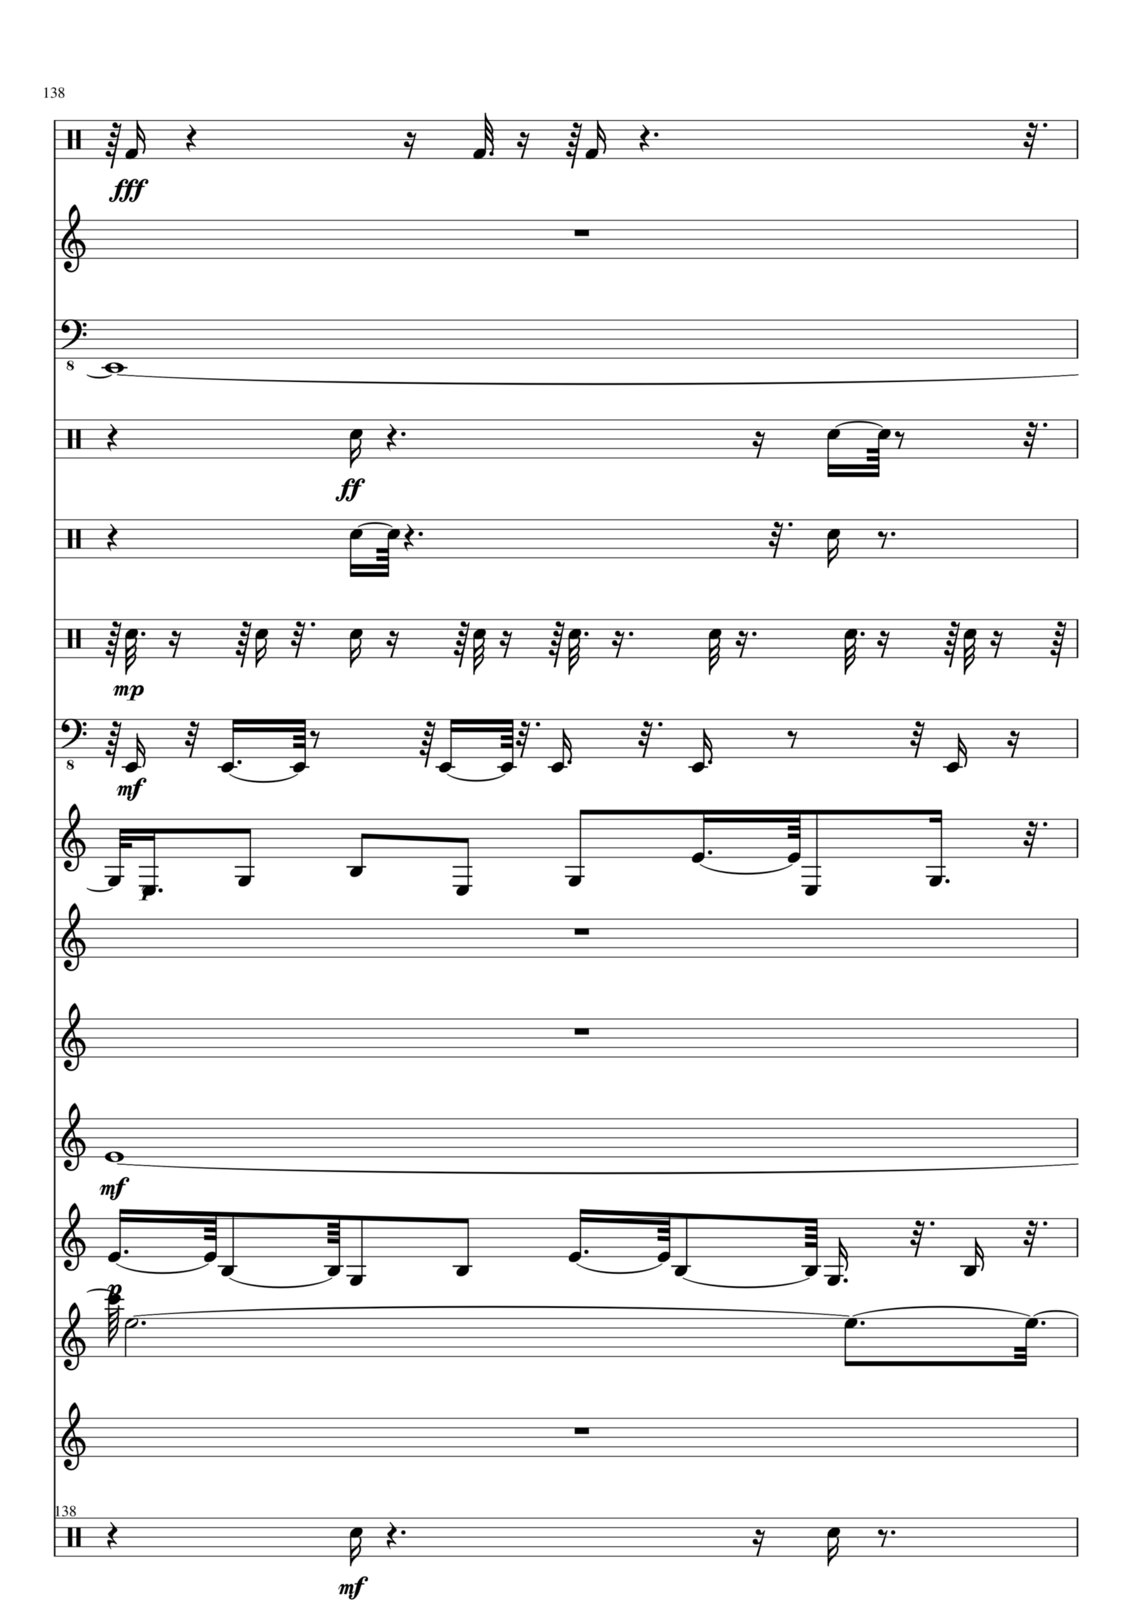 Utro polinyi slide, Image 138